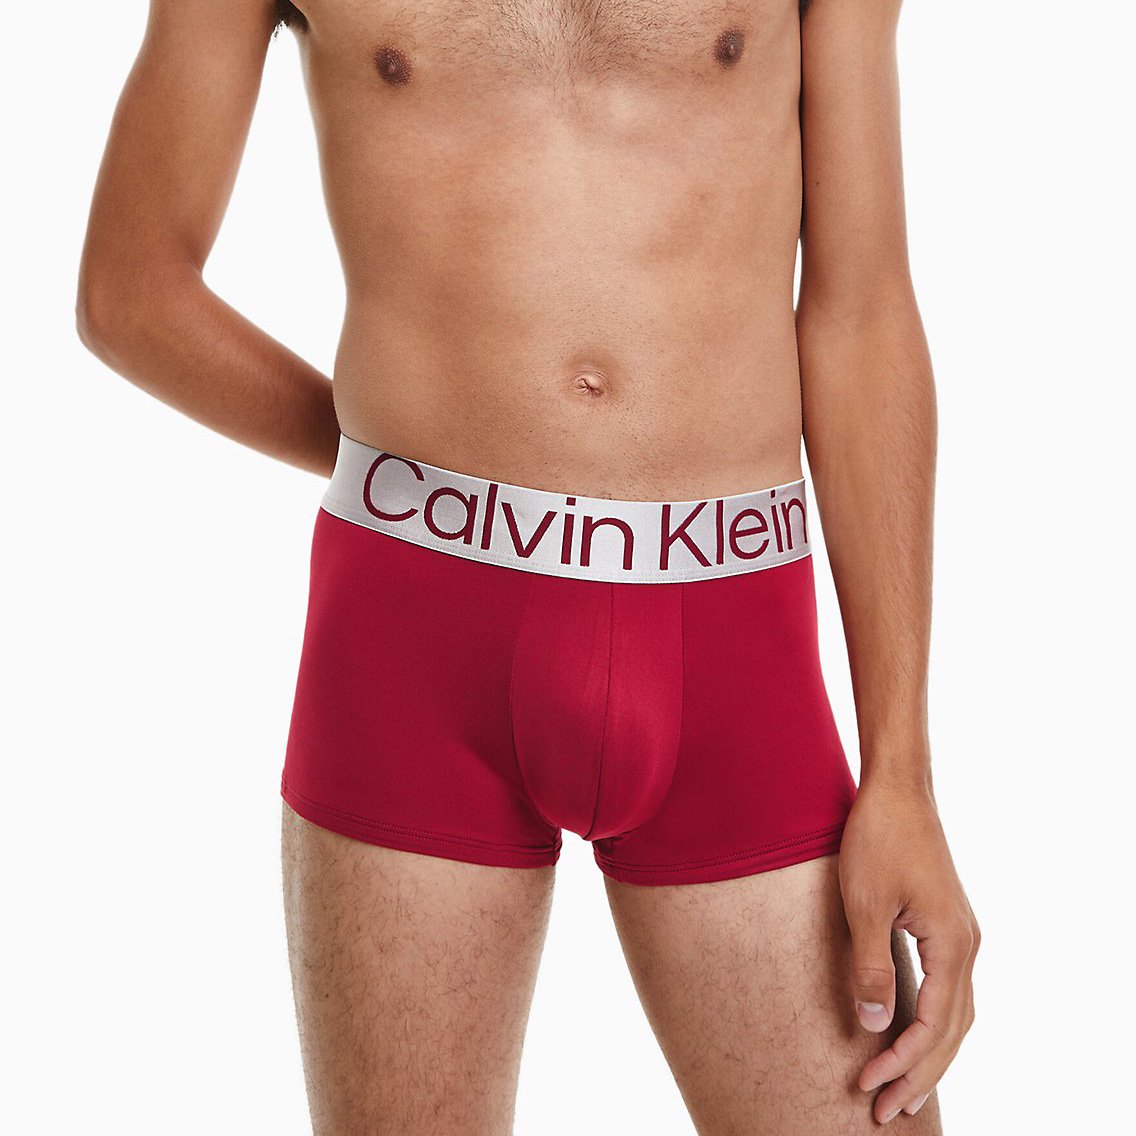 Calvin Klein(カルバンクライン)[NB3074-911]:ボクサーパンツ,男性下着,インナーの通販